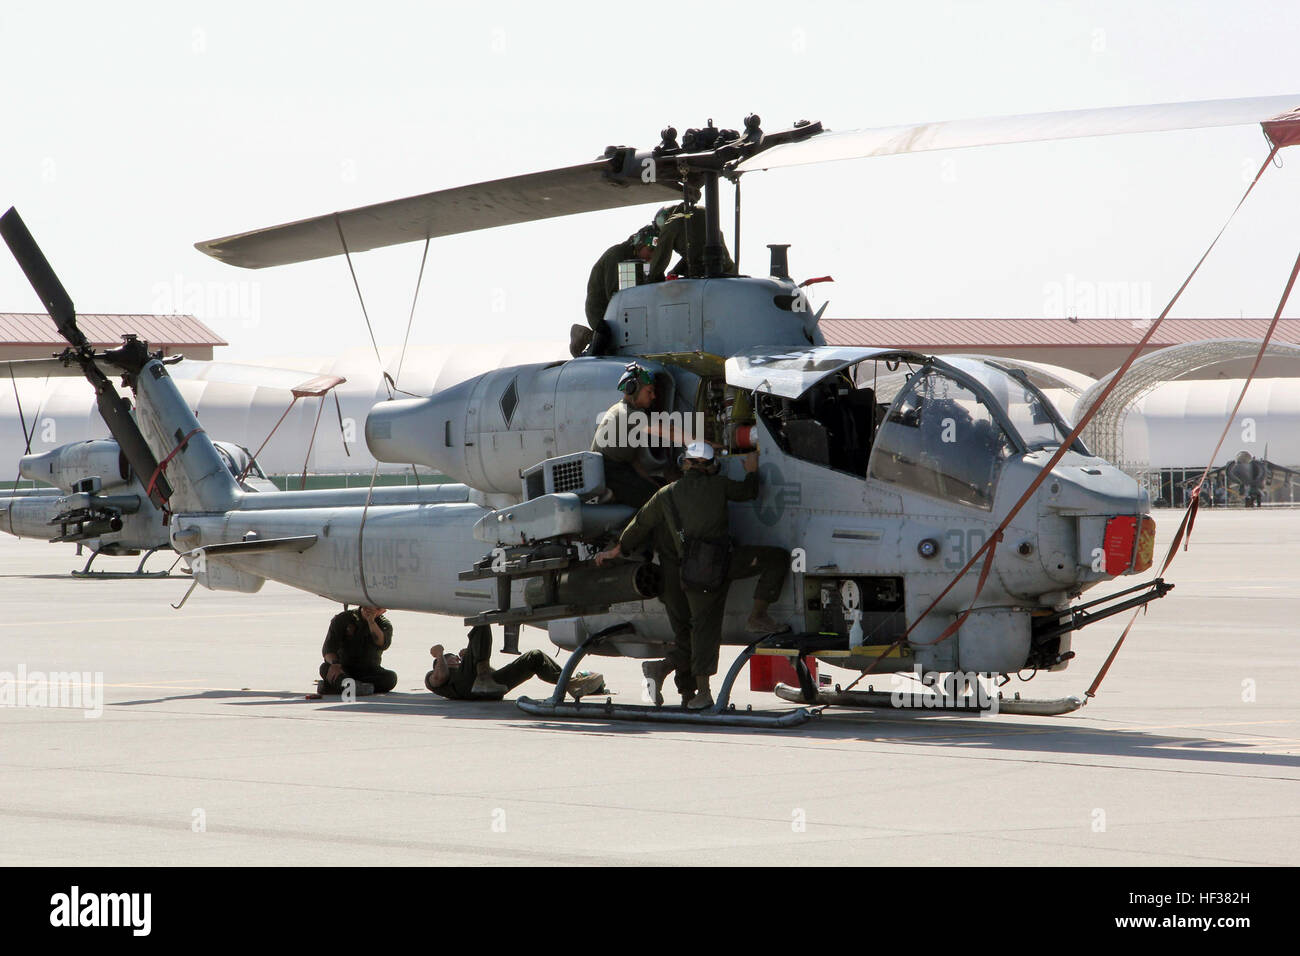 Mecánico de aeronaves Marines con armas y tácticas de Aviación Marina Escuadrón 1 inspeccione un AH-1W Super Cobra Helicóptero durante una inspección de rutina de mantenimiento armas y tácticas Instructor 2-15 a bordo del Marine Corps Air Station Yuma, Arizona, 22 de abril de 2015. El mantenimiento que proporcionan garantiza que todos los candidatos piloto completar cada misión de forma segura. El WTI es un curso de siete semanas hospedado por MAWTS-1 que proporciona funciones avanzadas de entrenamiento táctico para certificar marino como armas y tácticas de los pilotos instructores, les prepara para volver a la flota y servir en clave oficial de formación de palanquillas. (Ee.Uu. Marine Cor Foto de stock